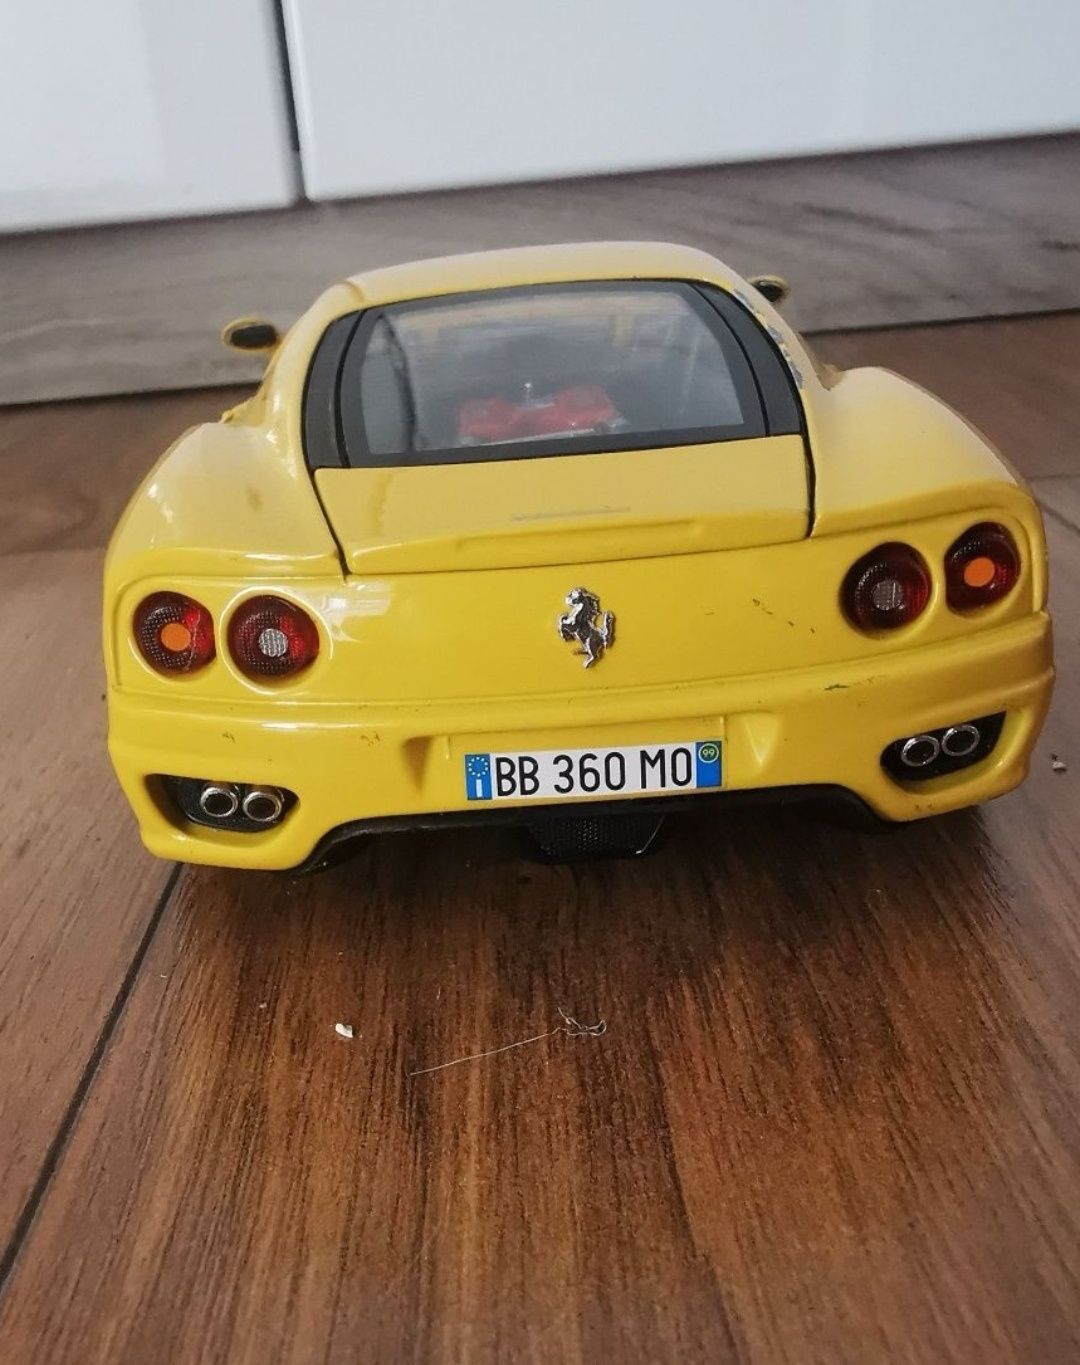 Macheta Ferrari1:18 metalica